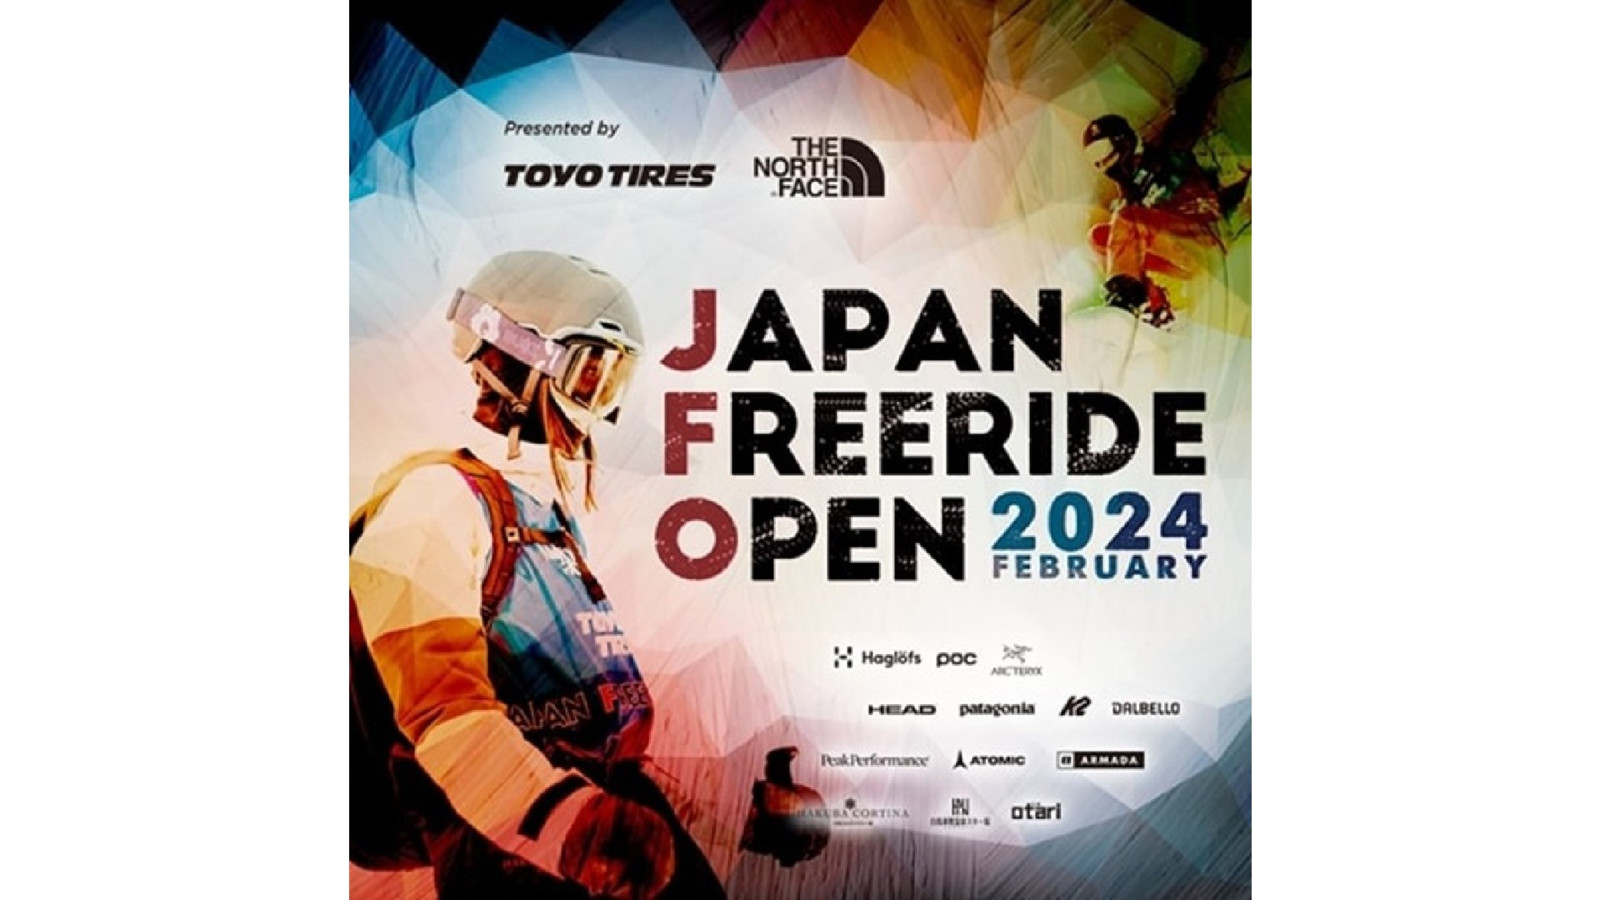 Die japanische Freeride Ski- und Snowboard Open 2024 werden von Toyo Tires unterstützt.